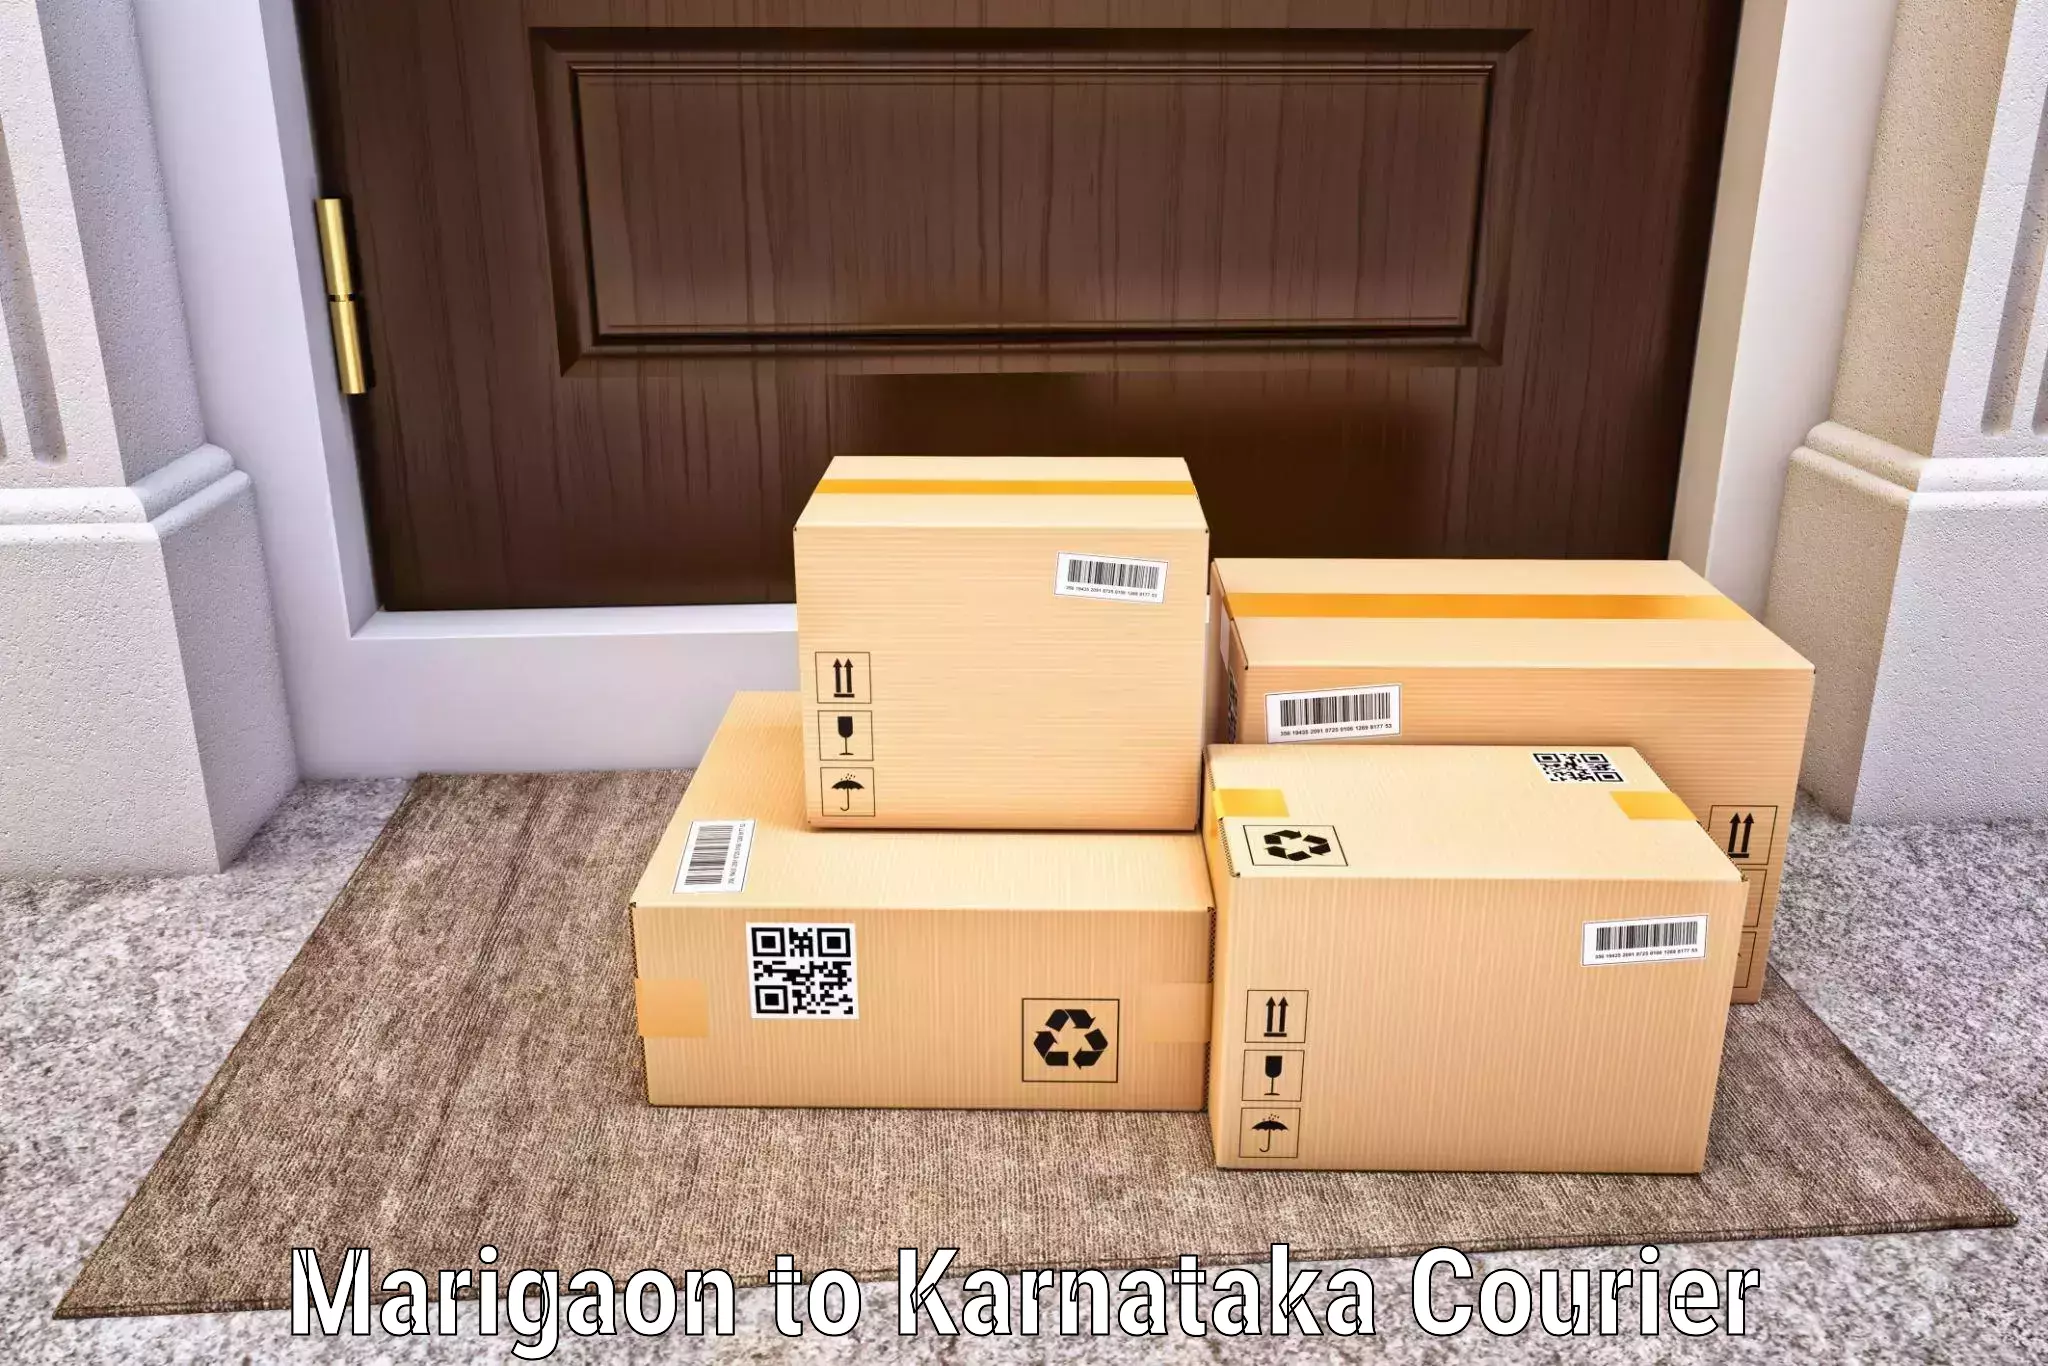 Urgent courier needs Marigaon to Gundlupete